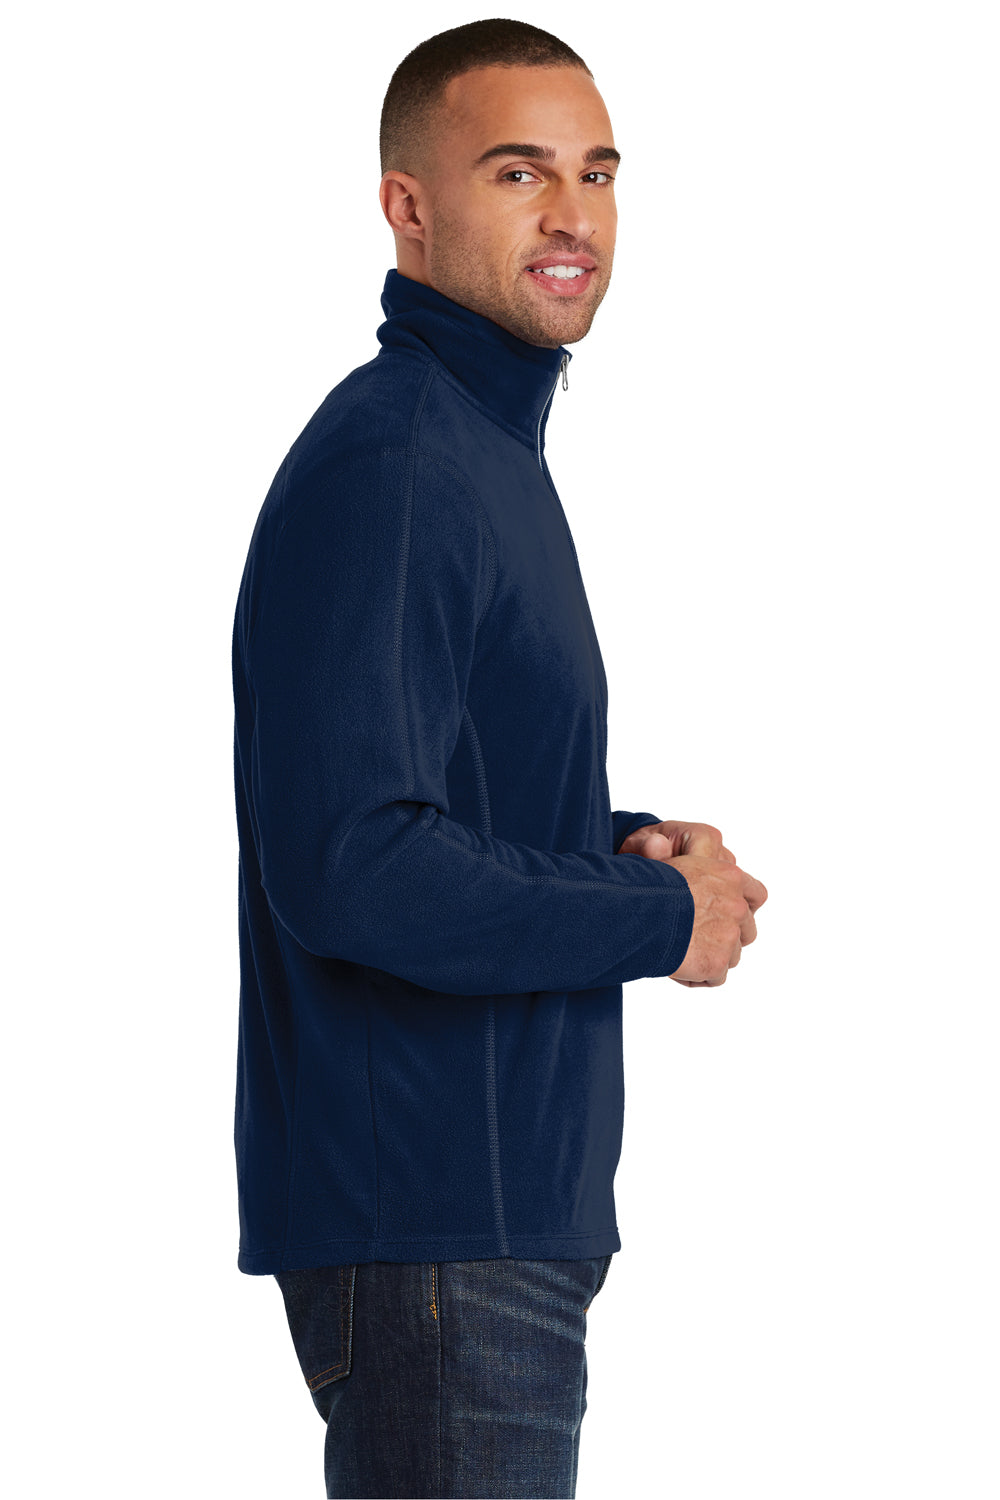 Port Authority F224 Mens Microfleece 1/4 Zip Sweatshirt Navy Blue Side